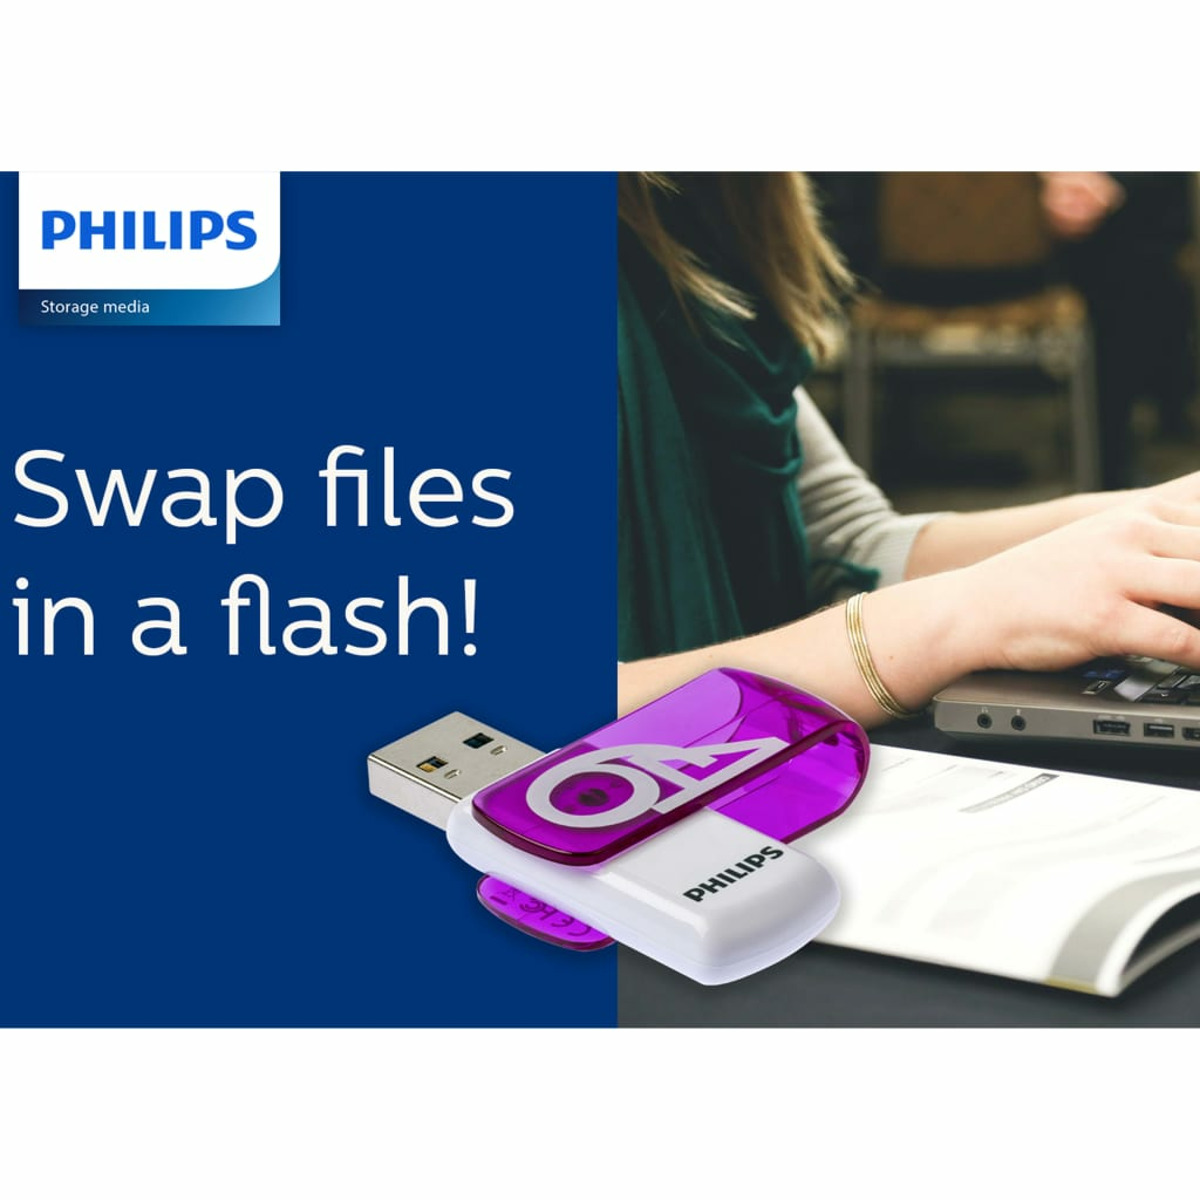 PHILIPS Vivid Edition 25 64 GB) (Weiß, Purple®, USB-Stick Magic MB/s